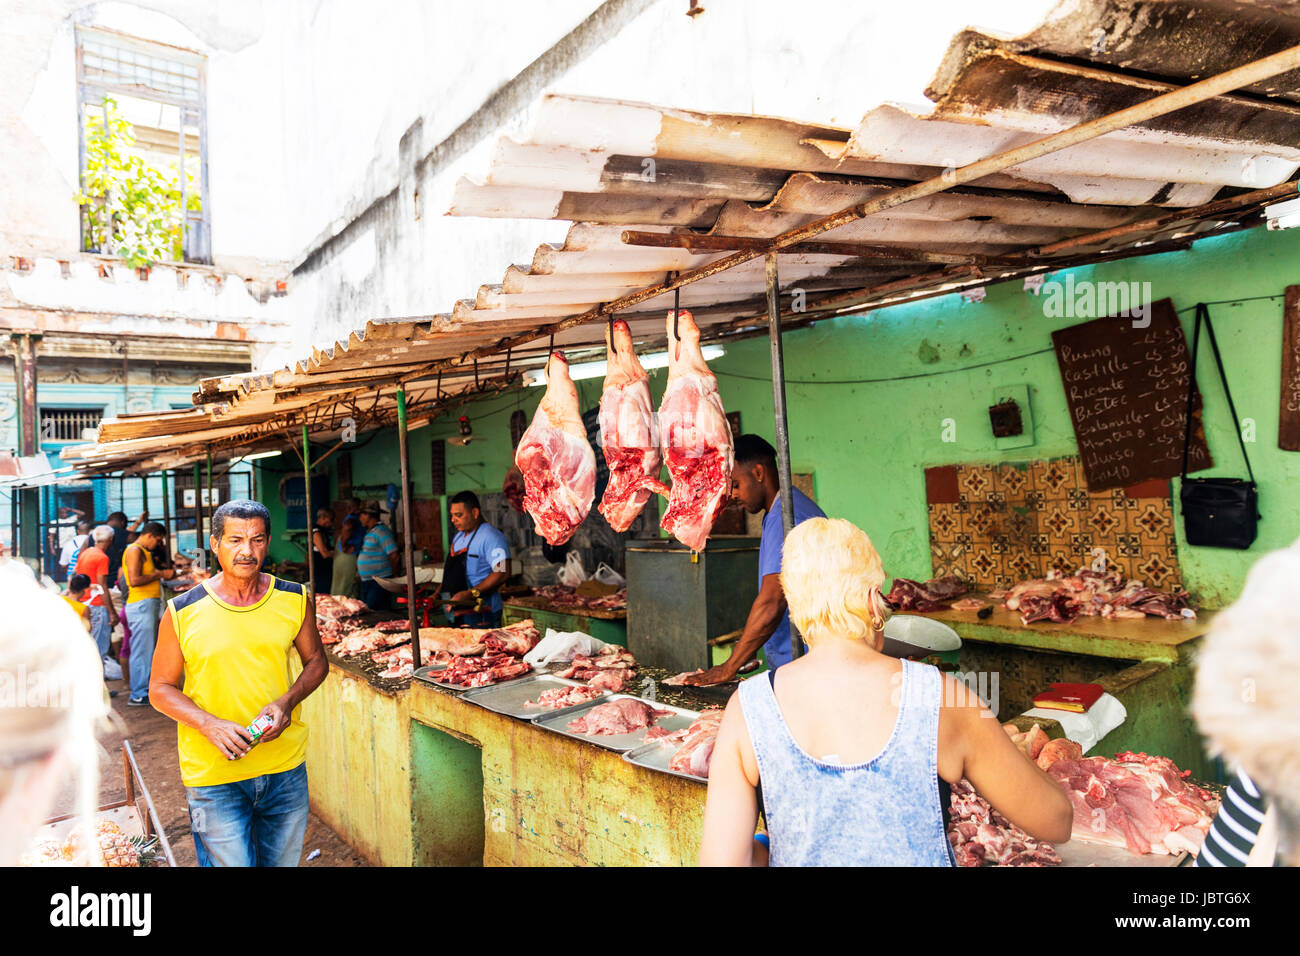 El Mercado De La Carne De La Habana Cuba En El Mercado Cubano El Mercado De La Carne De Cerdo